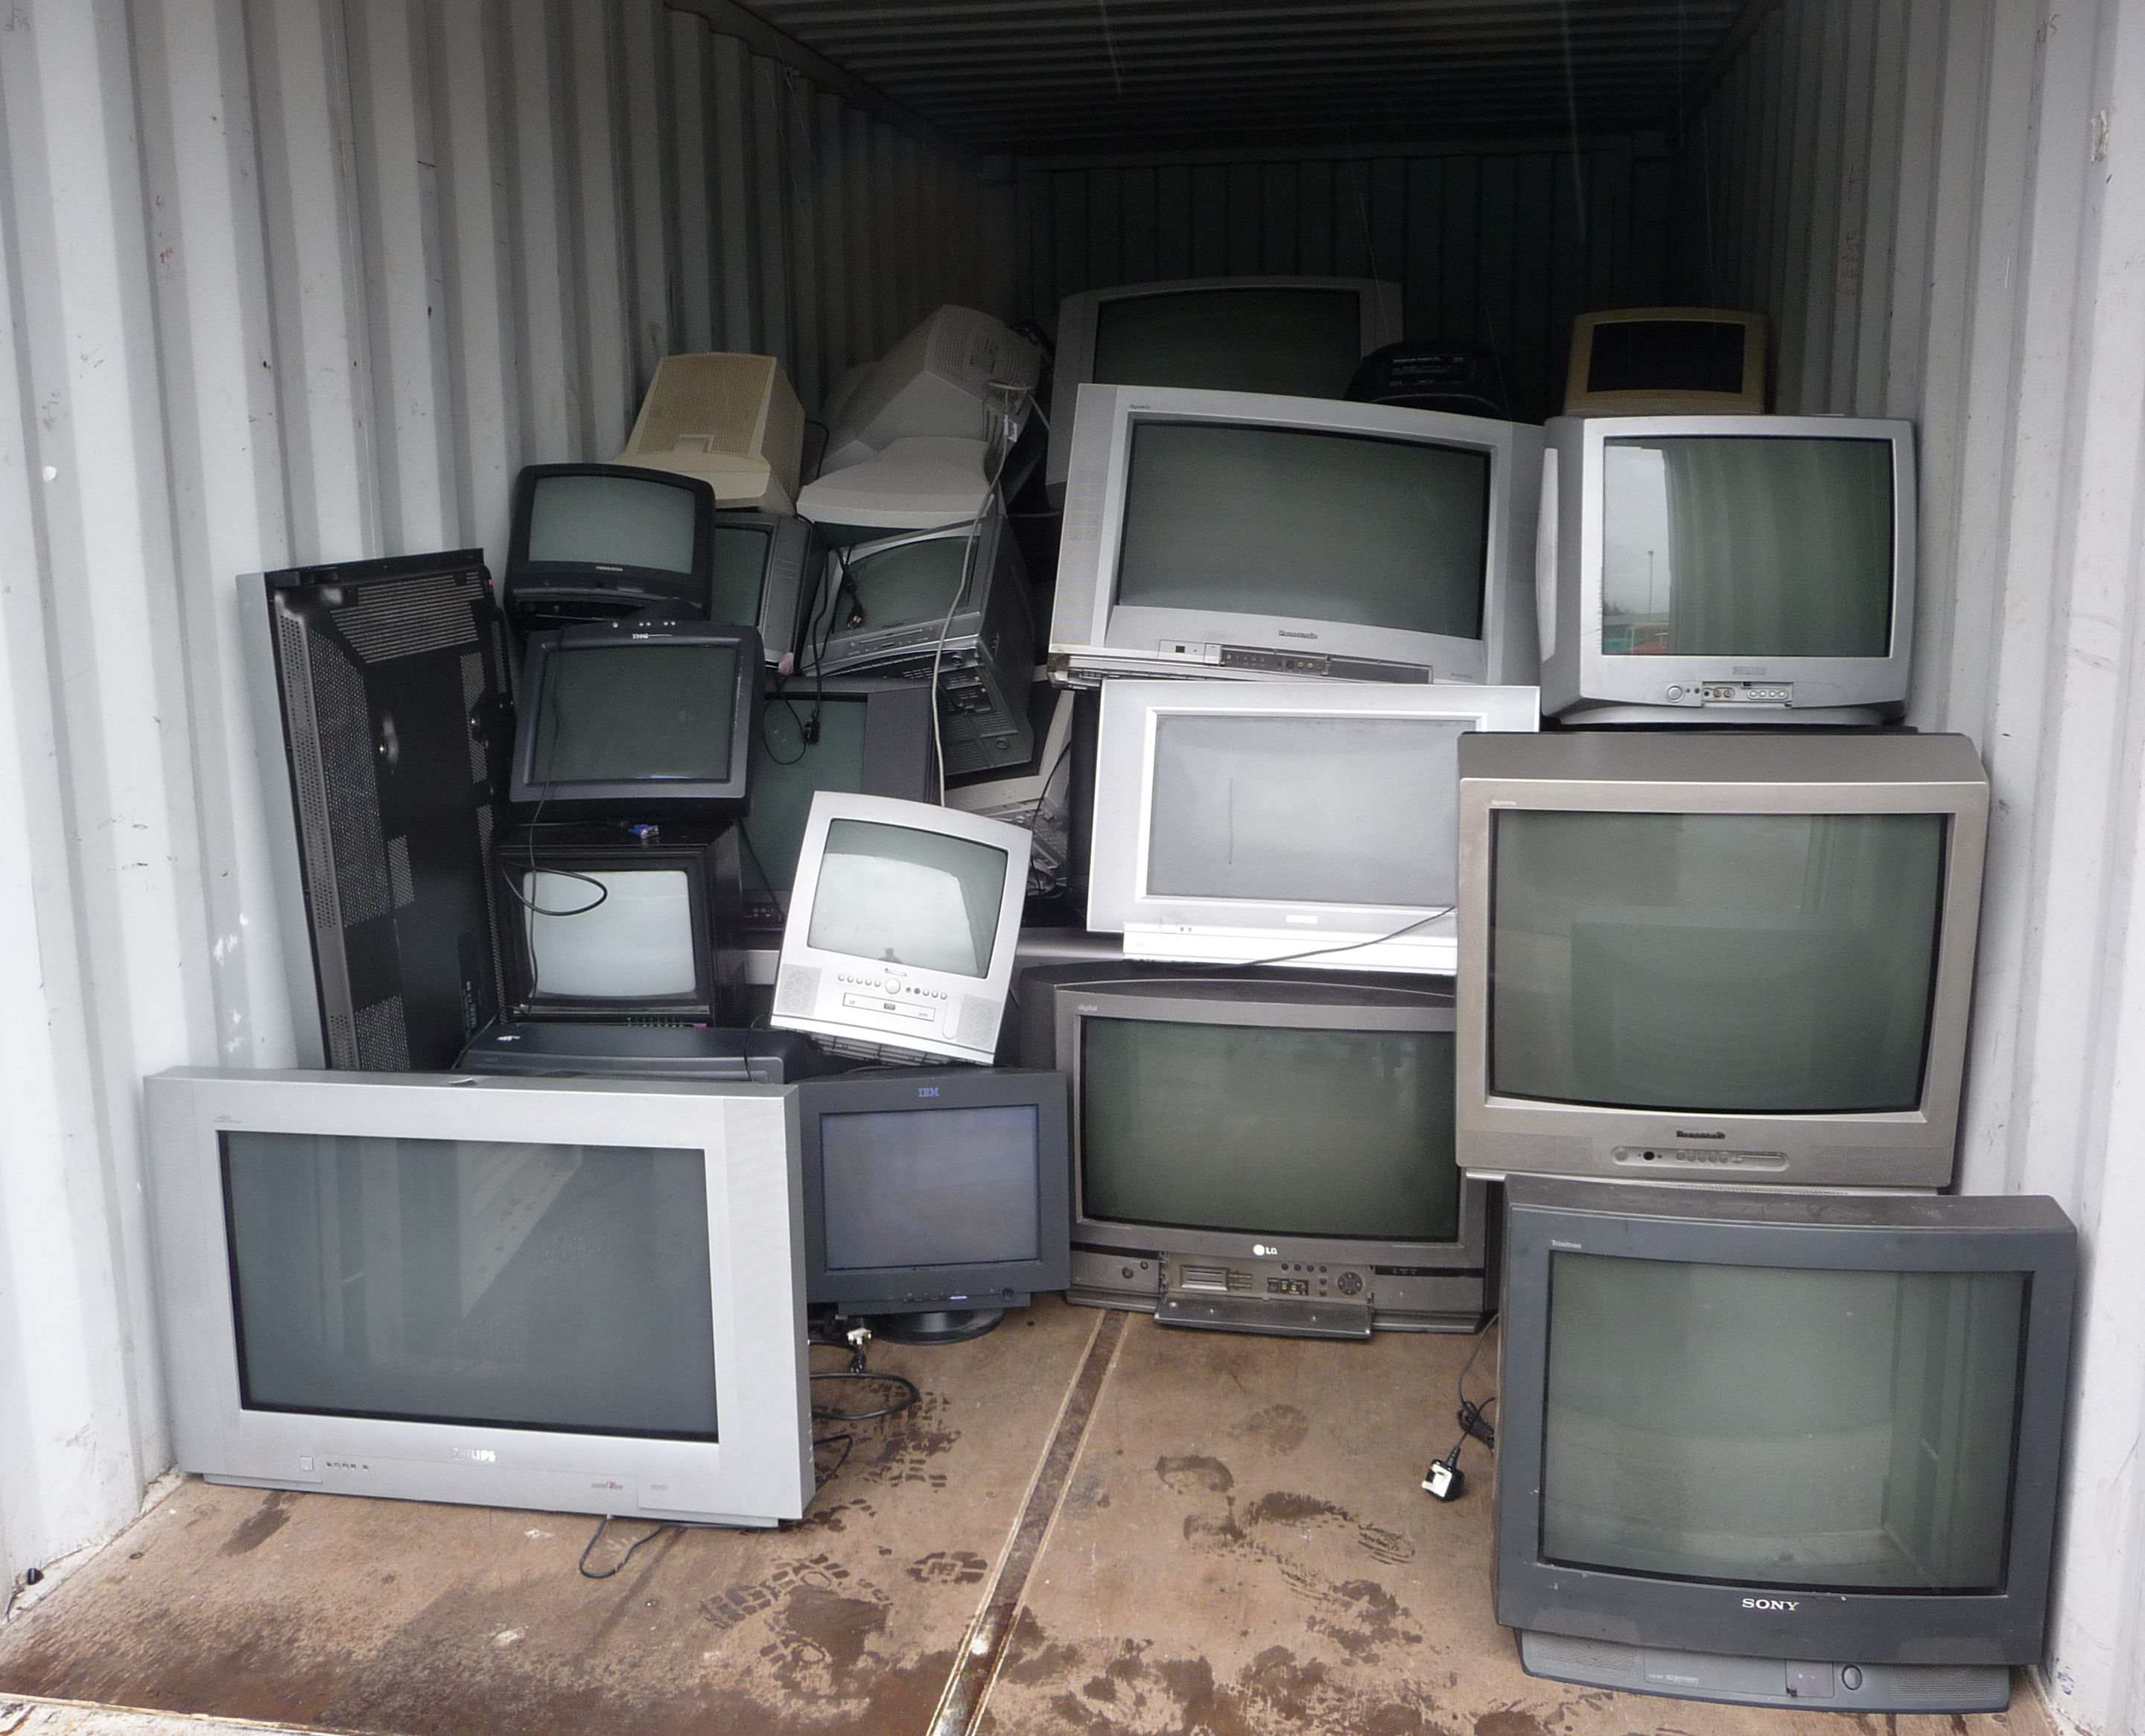 Сдать нерабочий телевизор. Старый телевизор. Телевизор с кинескопом. Скупают старые телевизоры. Старый кинескопный телевизор.